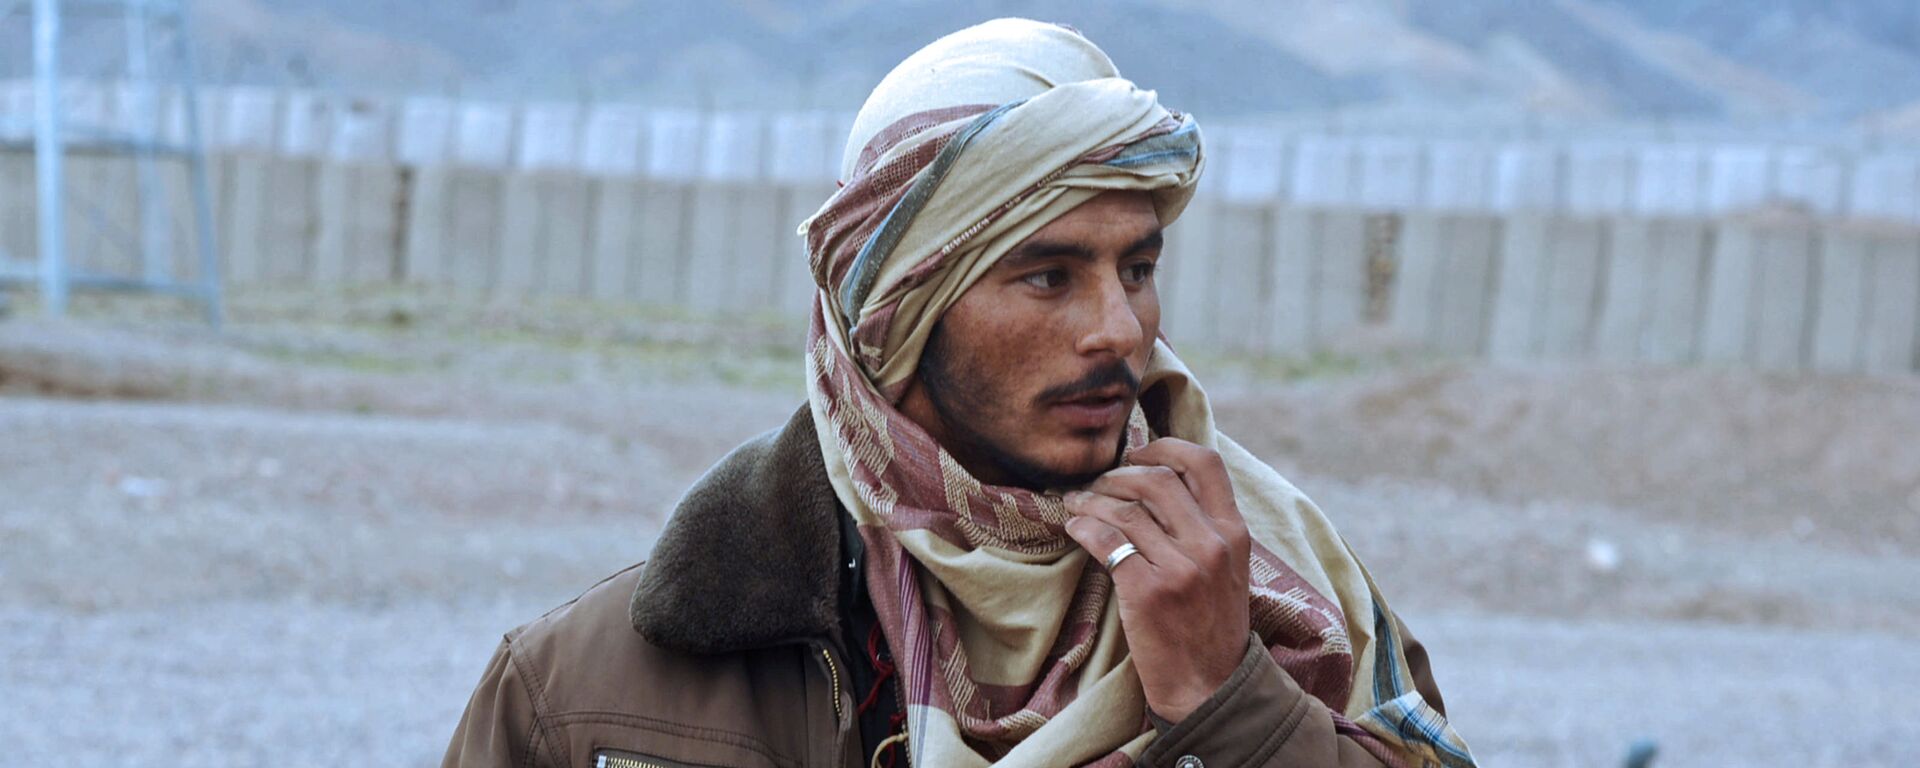 Бывший член движения Талибан с фугасом в руках. Архивное фото - Sputnik Тоҷикистон, 1920, 25.04.2021